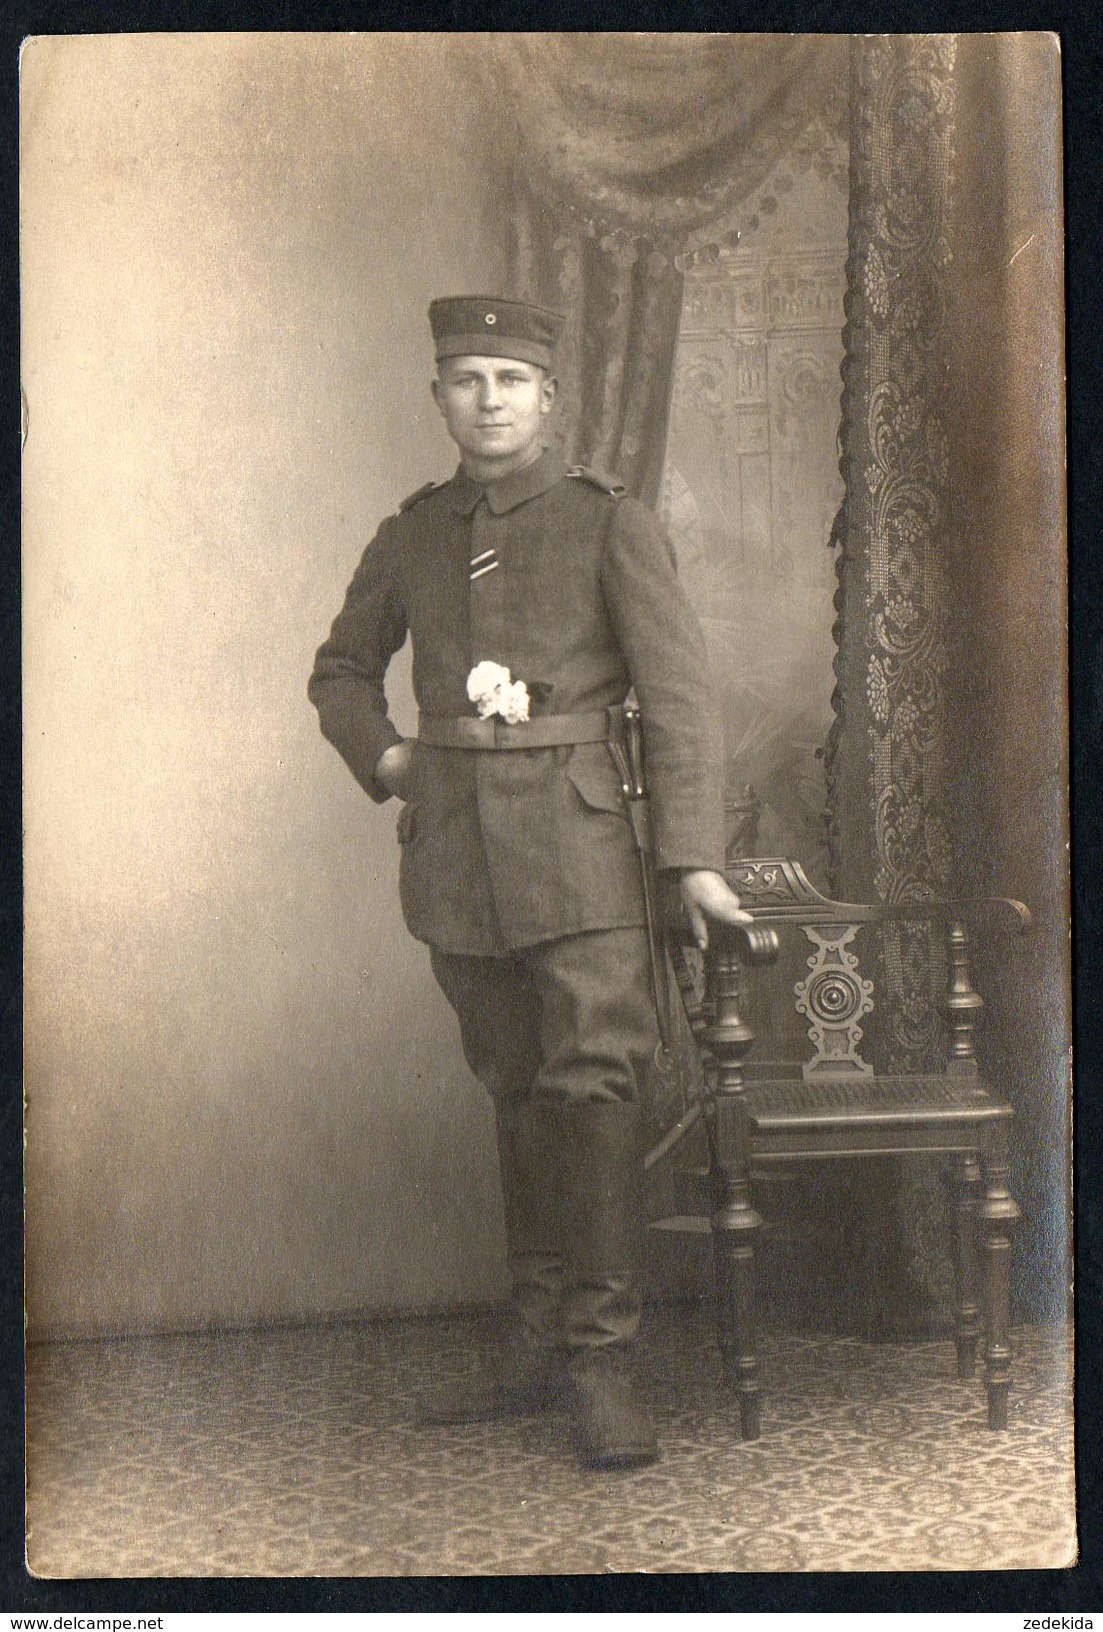 A3118 - Alte Foto Ansichtskarte - Soldat Uniform Bajonett - 1. WK WW - Ernst Nasser ? - Weltkrieg 1914-18